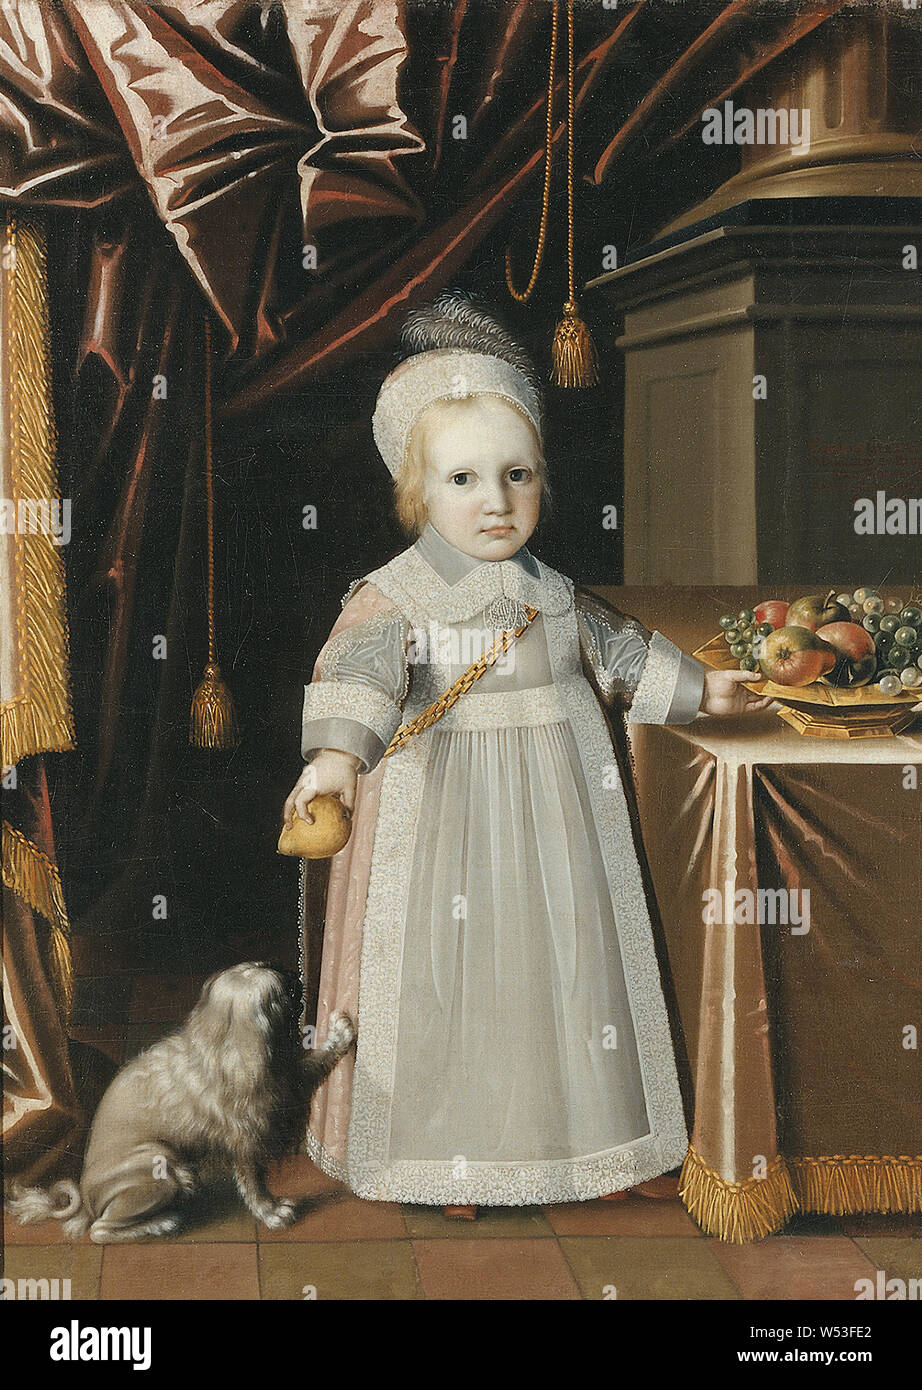 Fürst Karl Gustav, Karl Gustav, 1648-1703, Prinz von Baden-Durlach, Malerei, 1651, Öl auf Leinwand, Höhe 129 cm (50,7 Zoll), Breite 92 cm (36,2 Zoll) Stockfoto